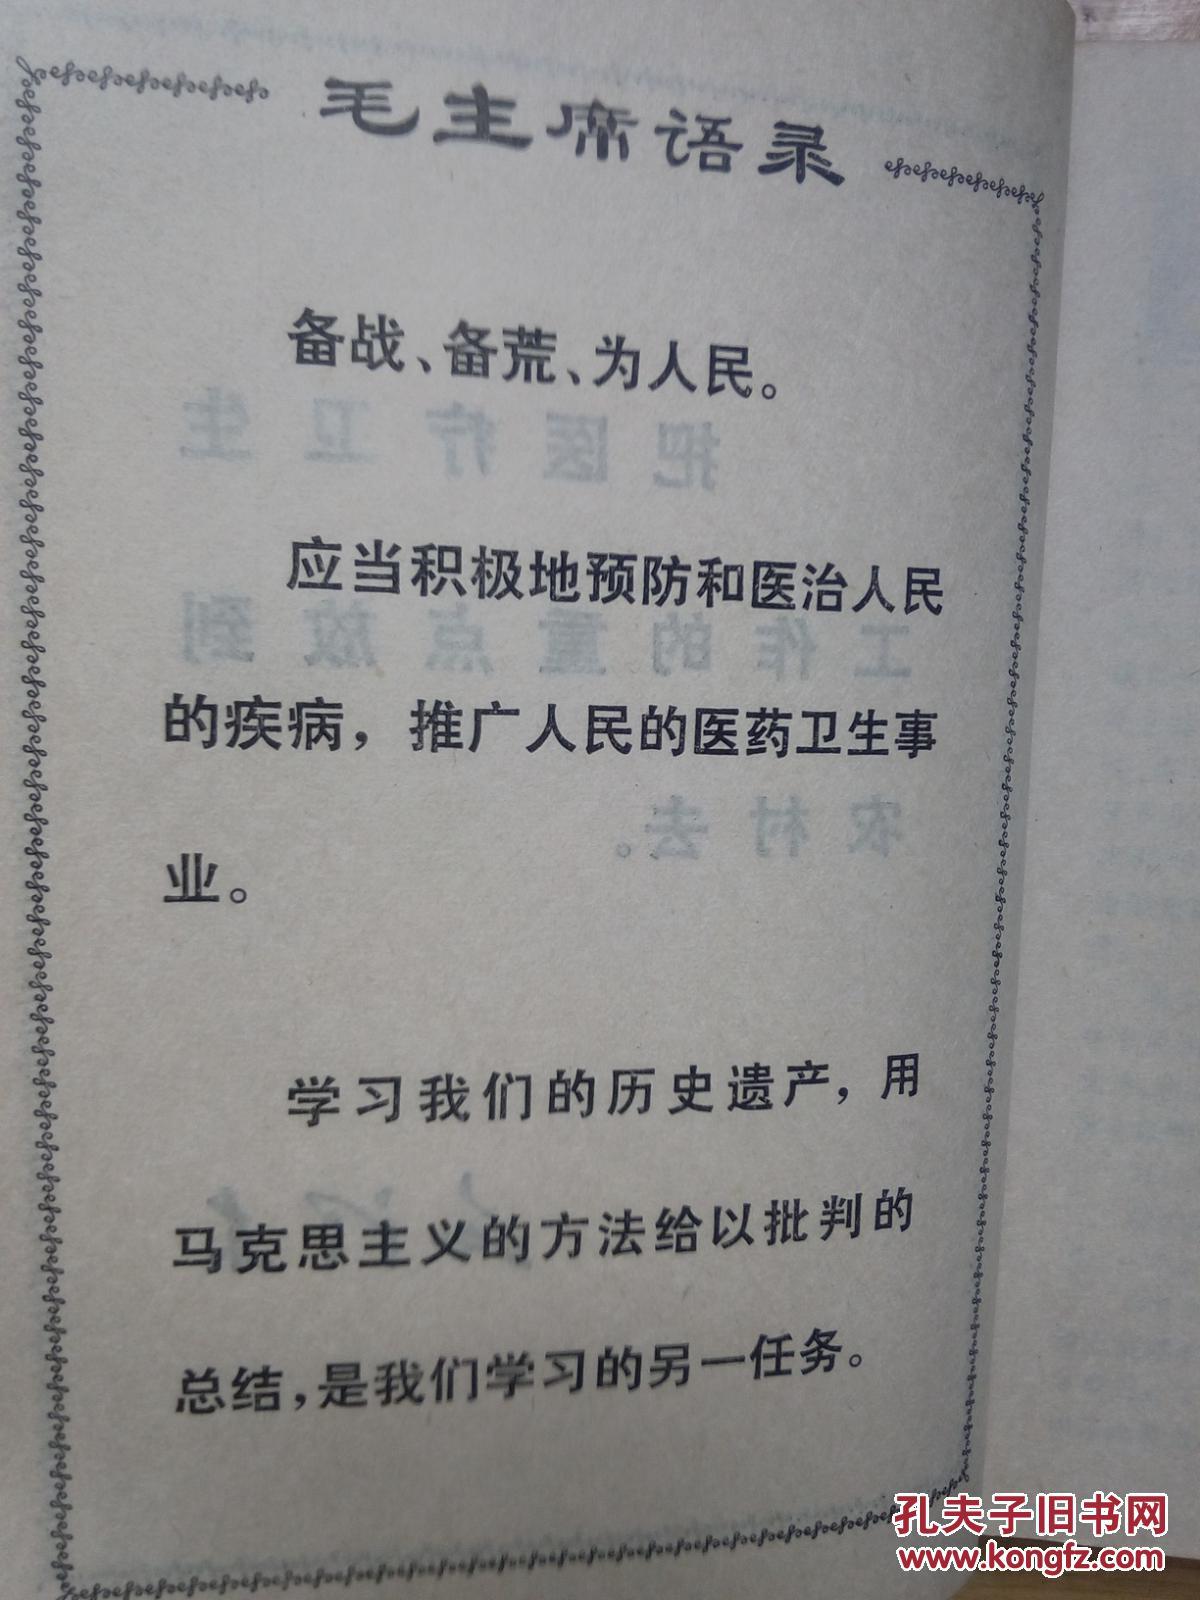 【图】赤脚医生手册 上海出版革命组_价格:28